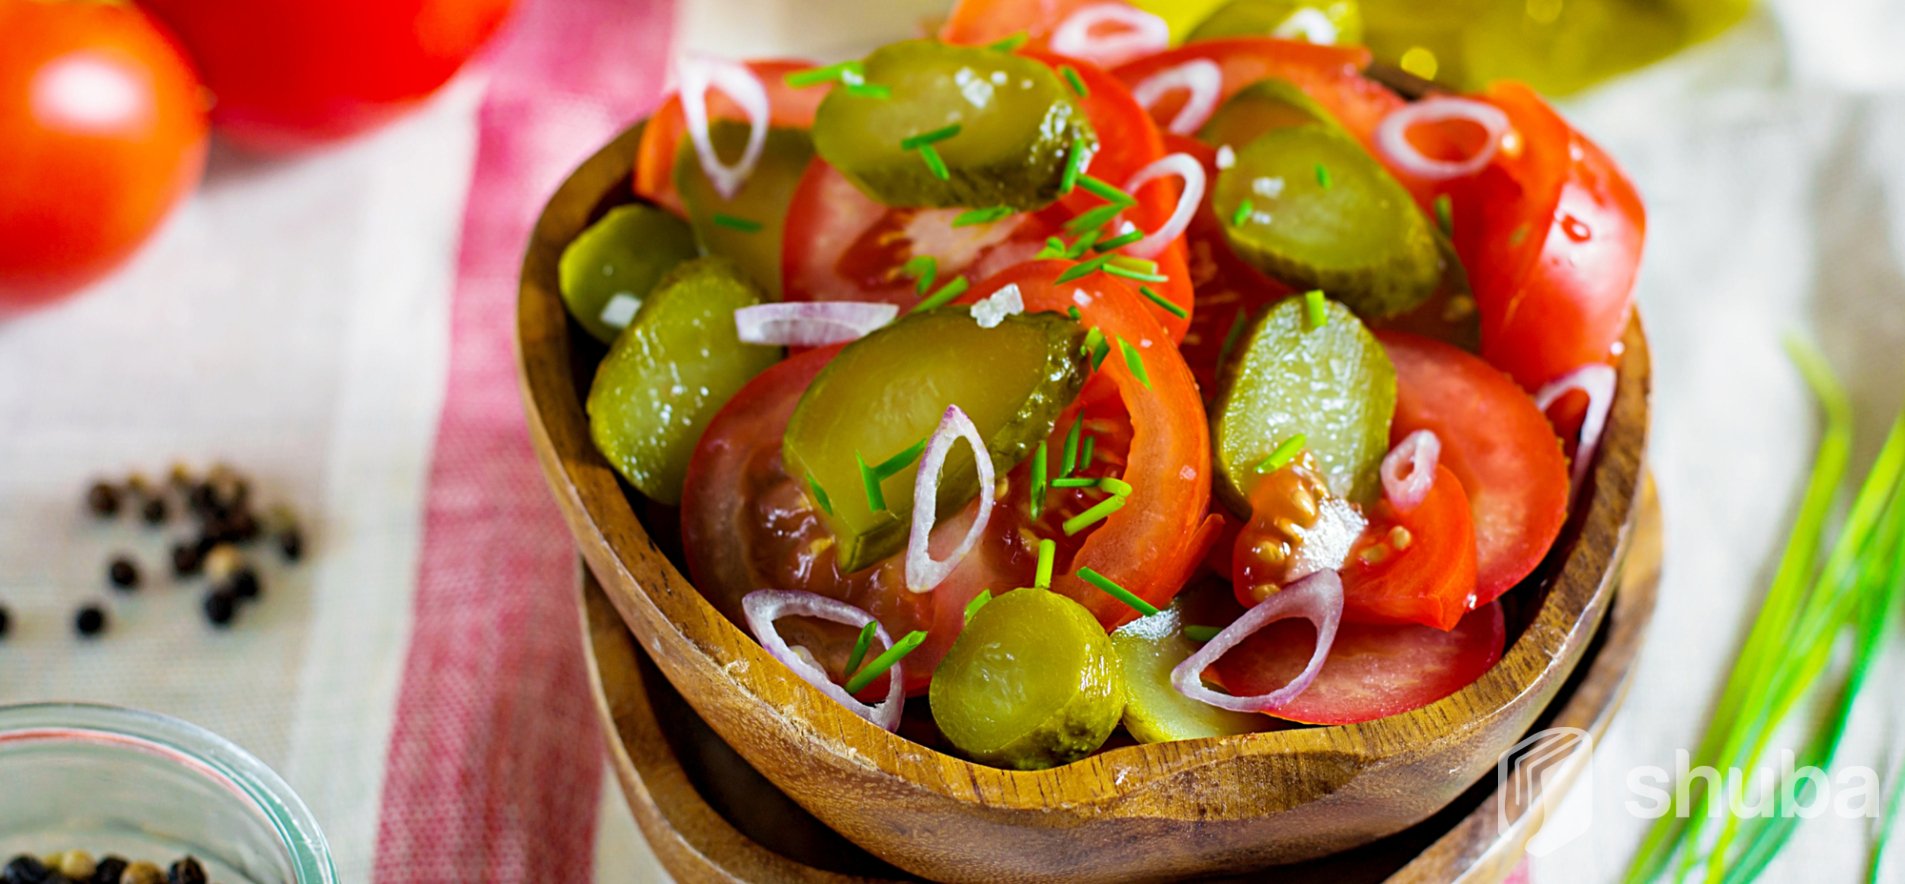 Ингредиенты для «Салат из помидоров с солеными огурцами»: